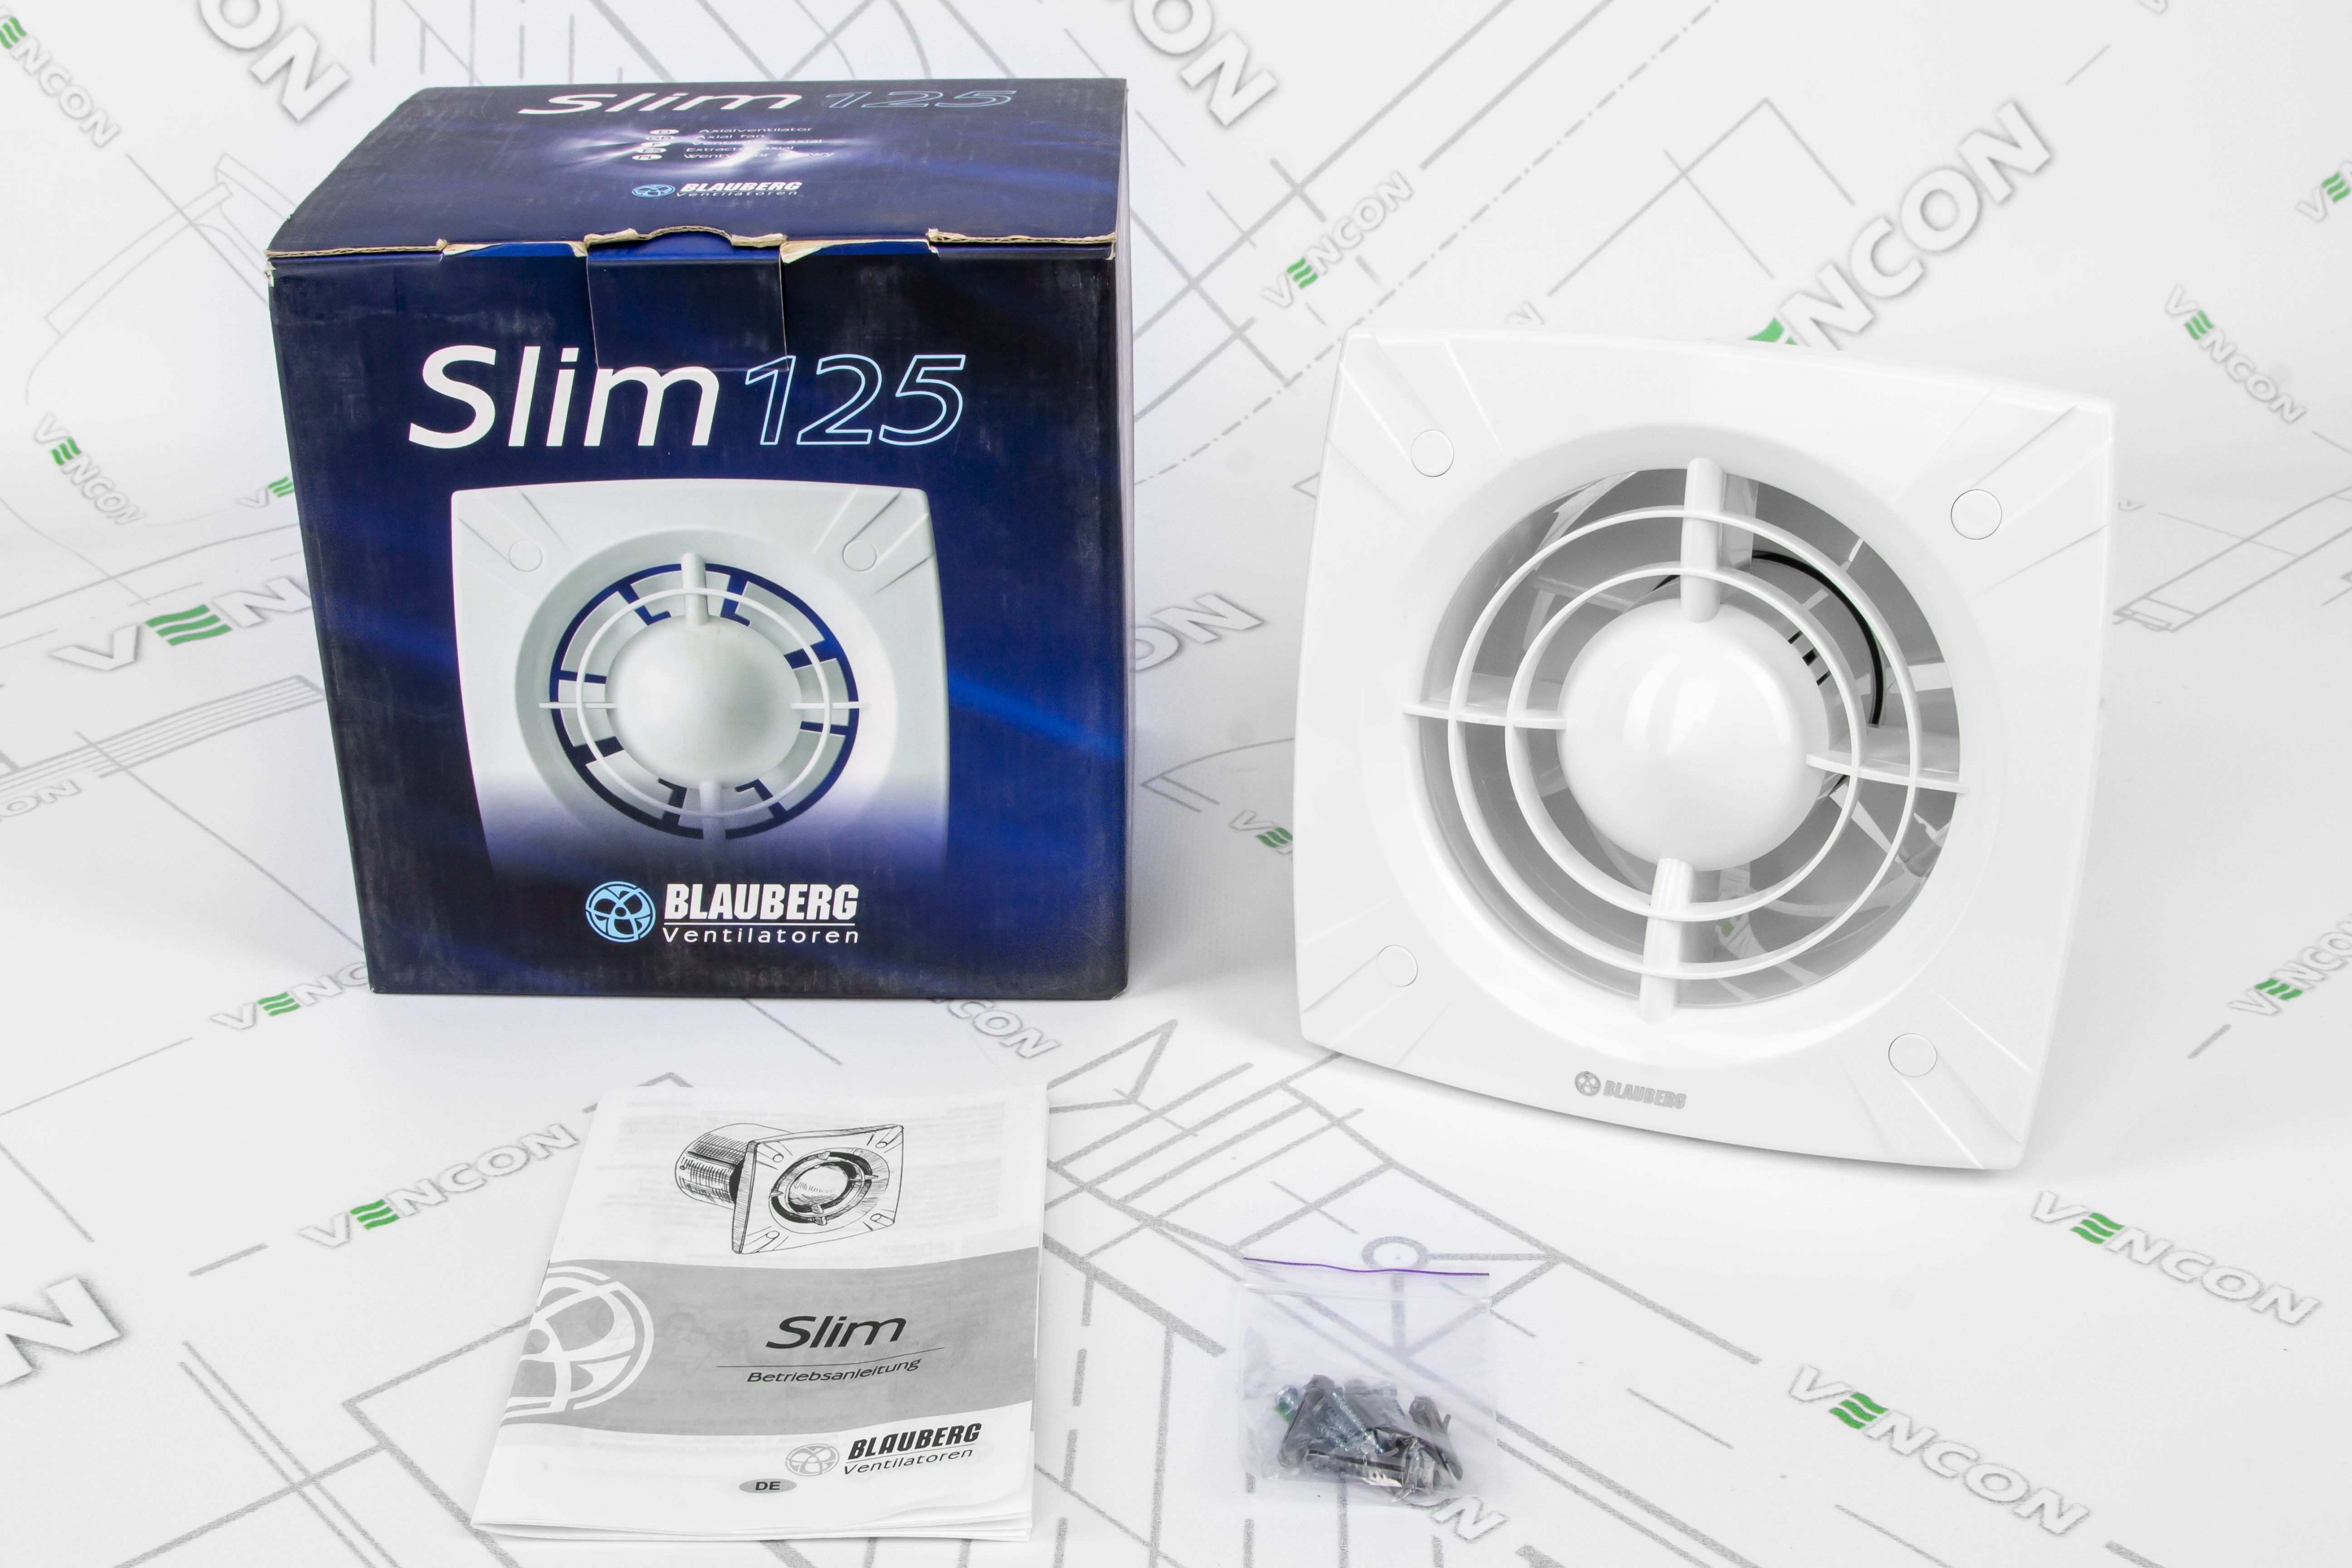 Вытяжной вентилятор Blauberg Slim 125 характеристики - фотография 7